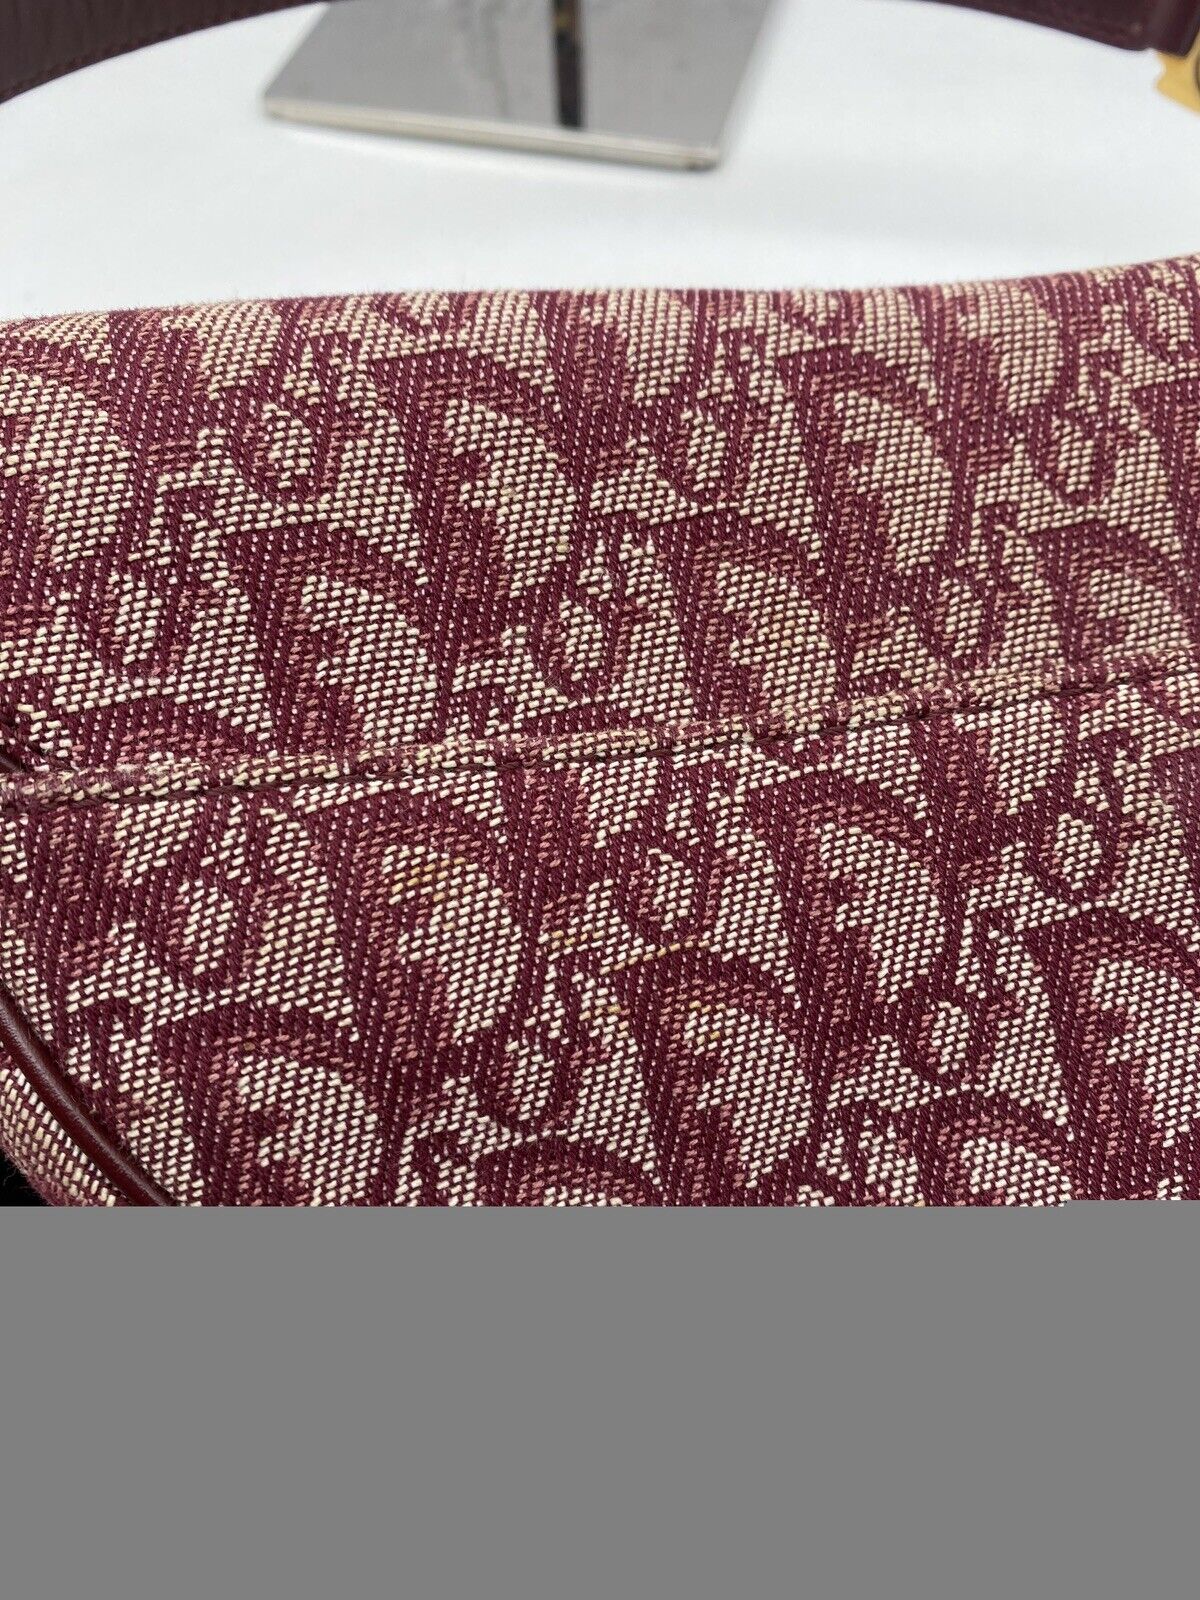 Christian Dior Red canvas monogram Vintage Saddle bag